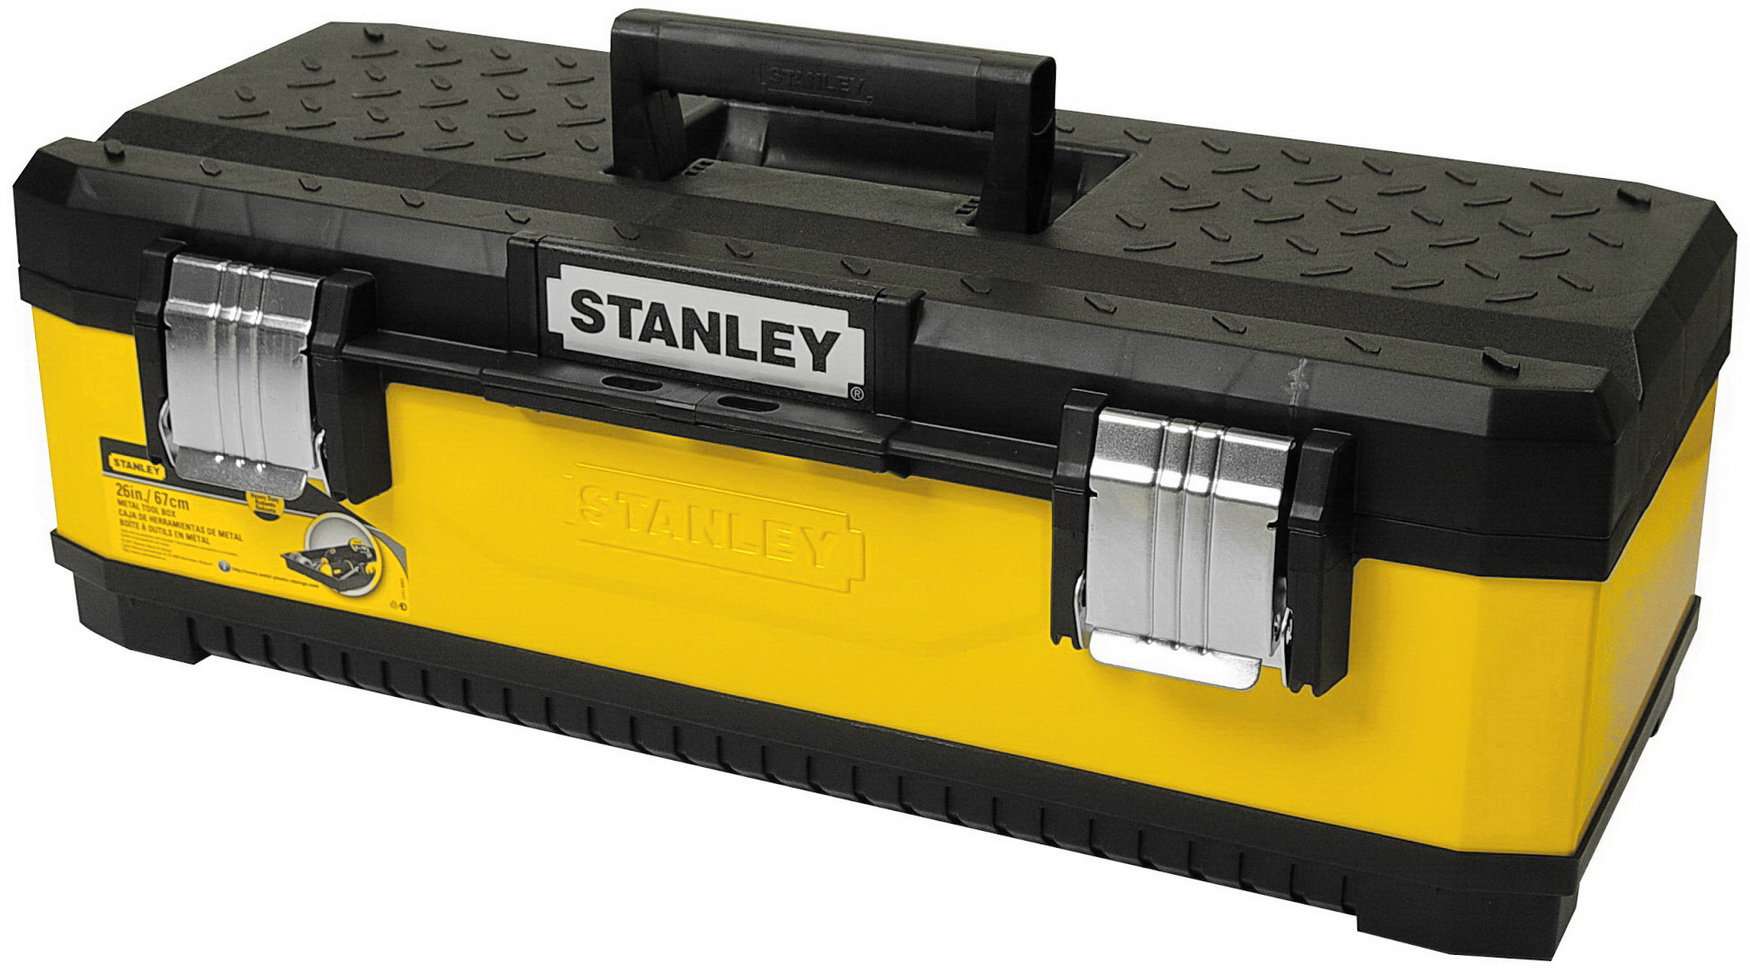 STANLEY 1-95-614 žlutý box na nářadí 660x290x220 mm